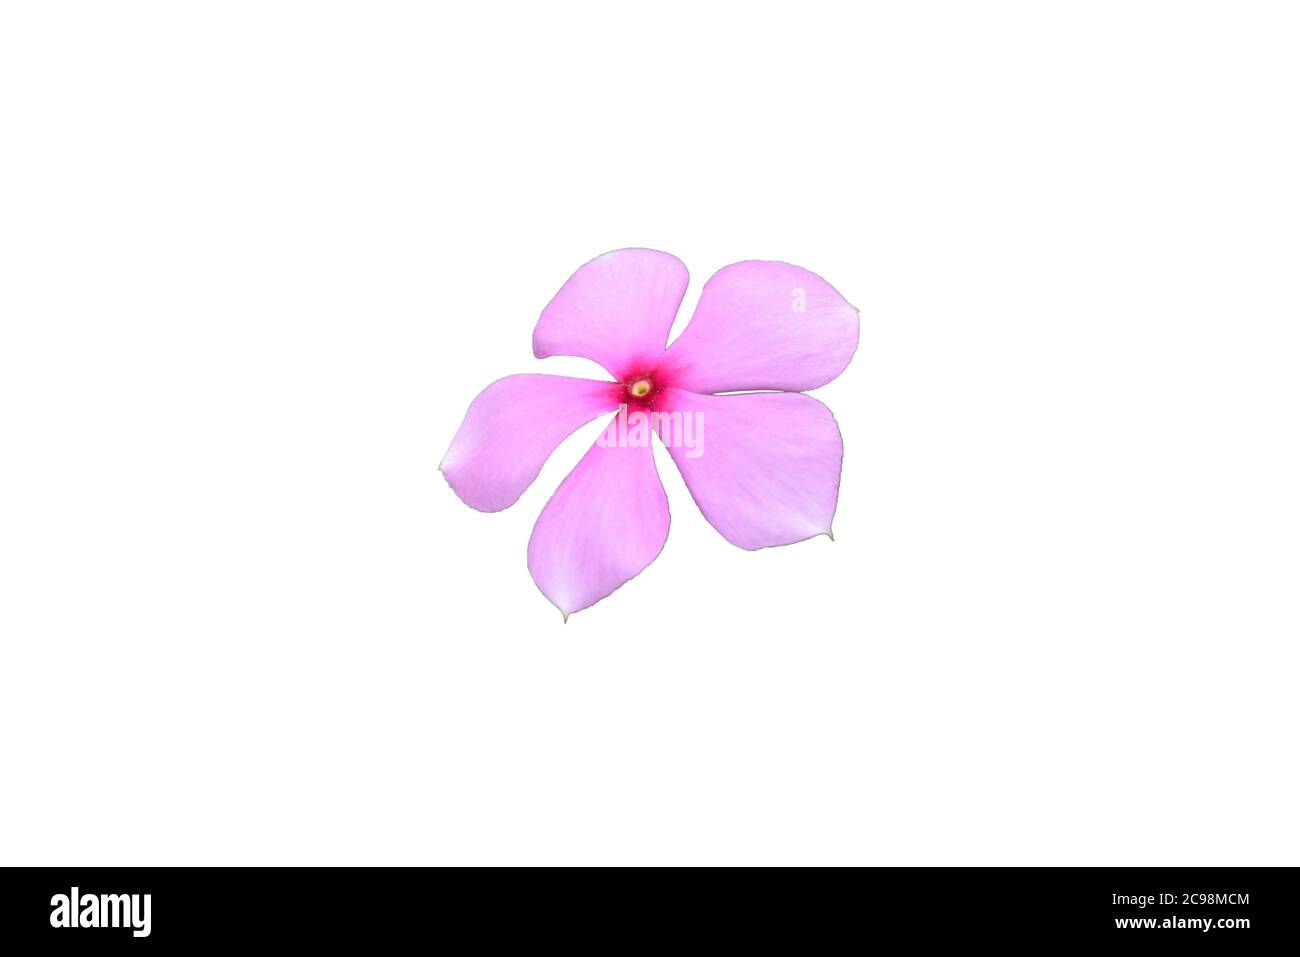 Madagascar Periwinkle o fiore rosa isolato con sfondo bianco Foto Stock